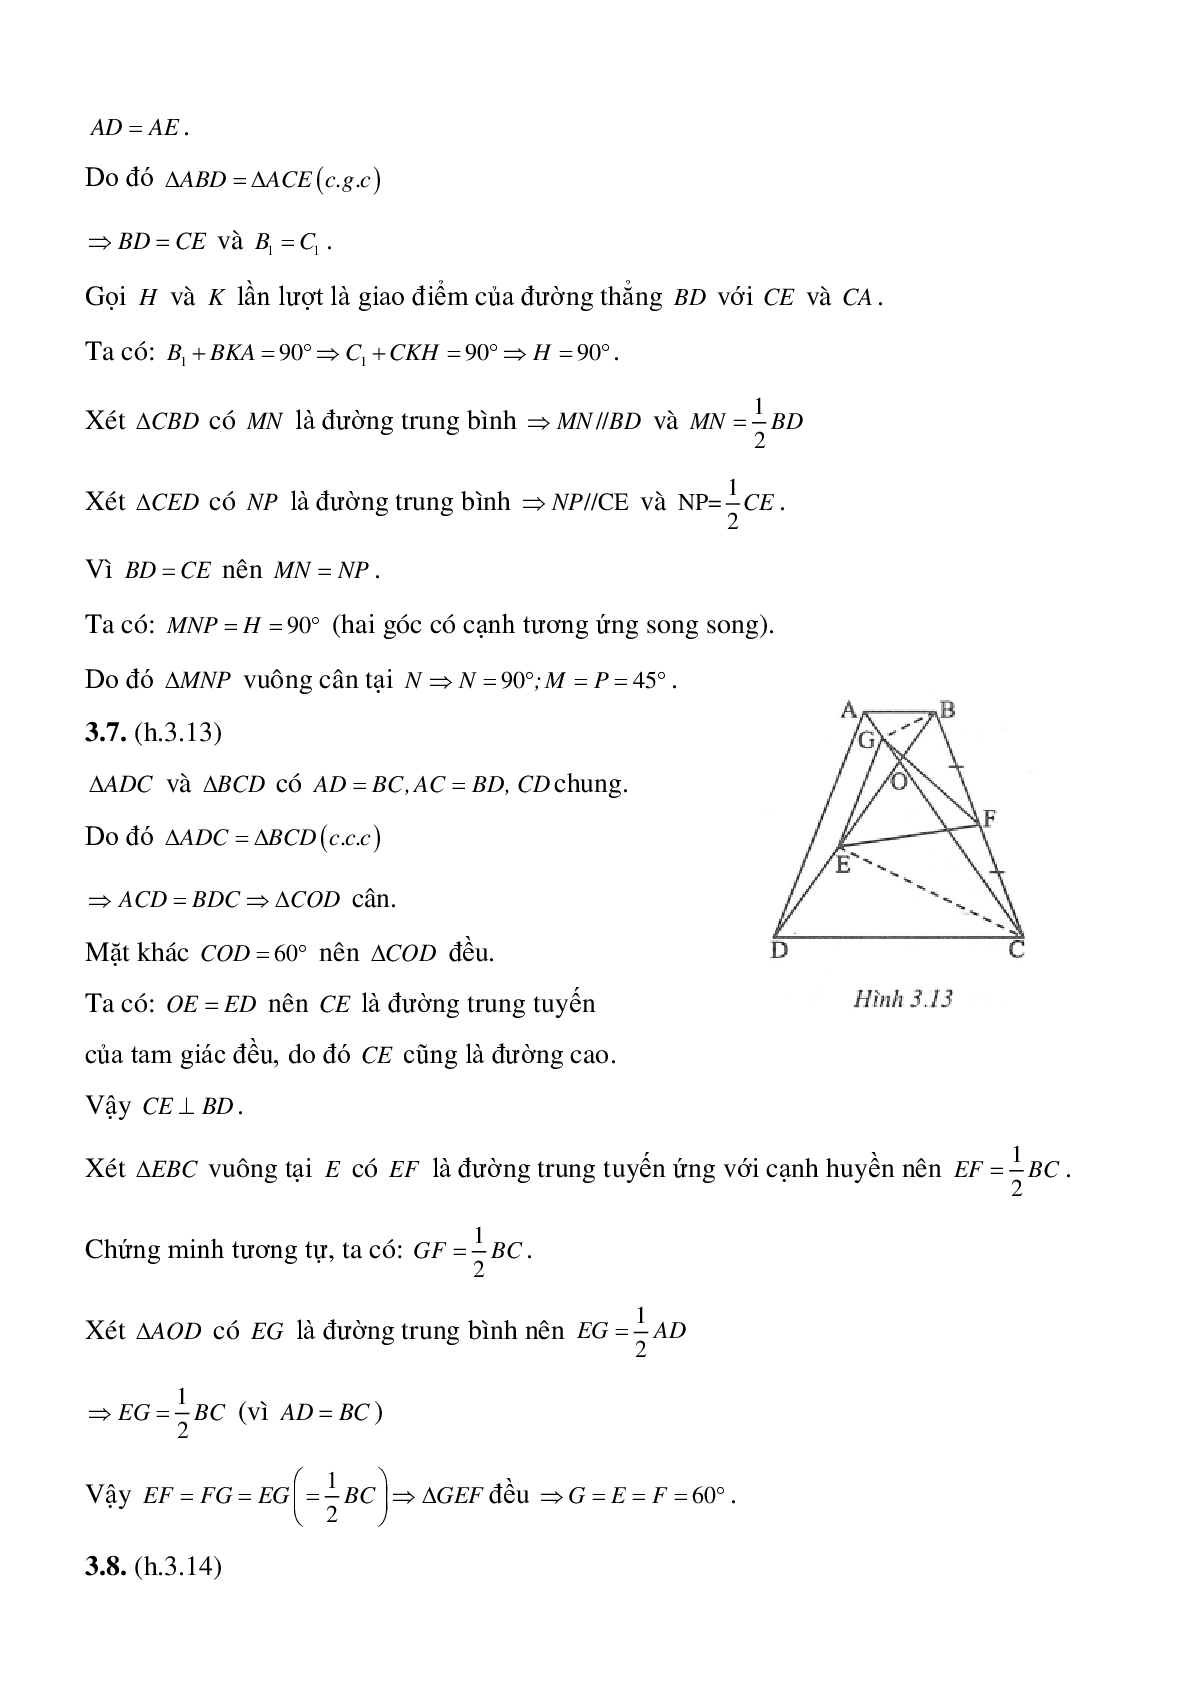 Đường trung bình của tam giác, của hình thang (trang 8)